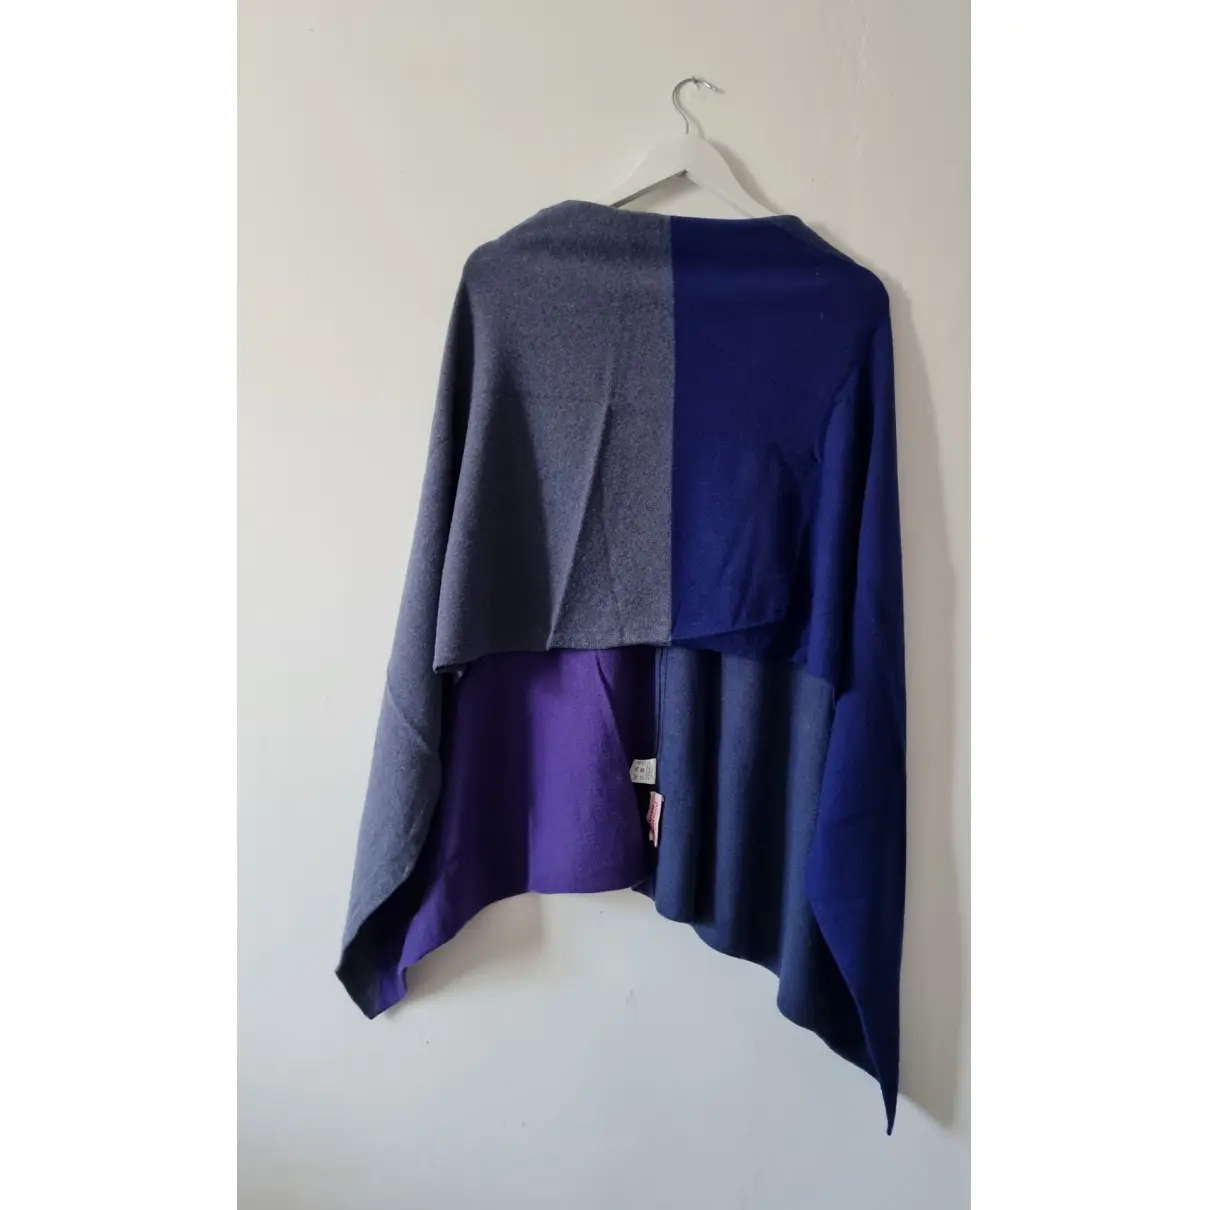 Buy Vivienne Westwood Wool jacket online